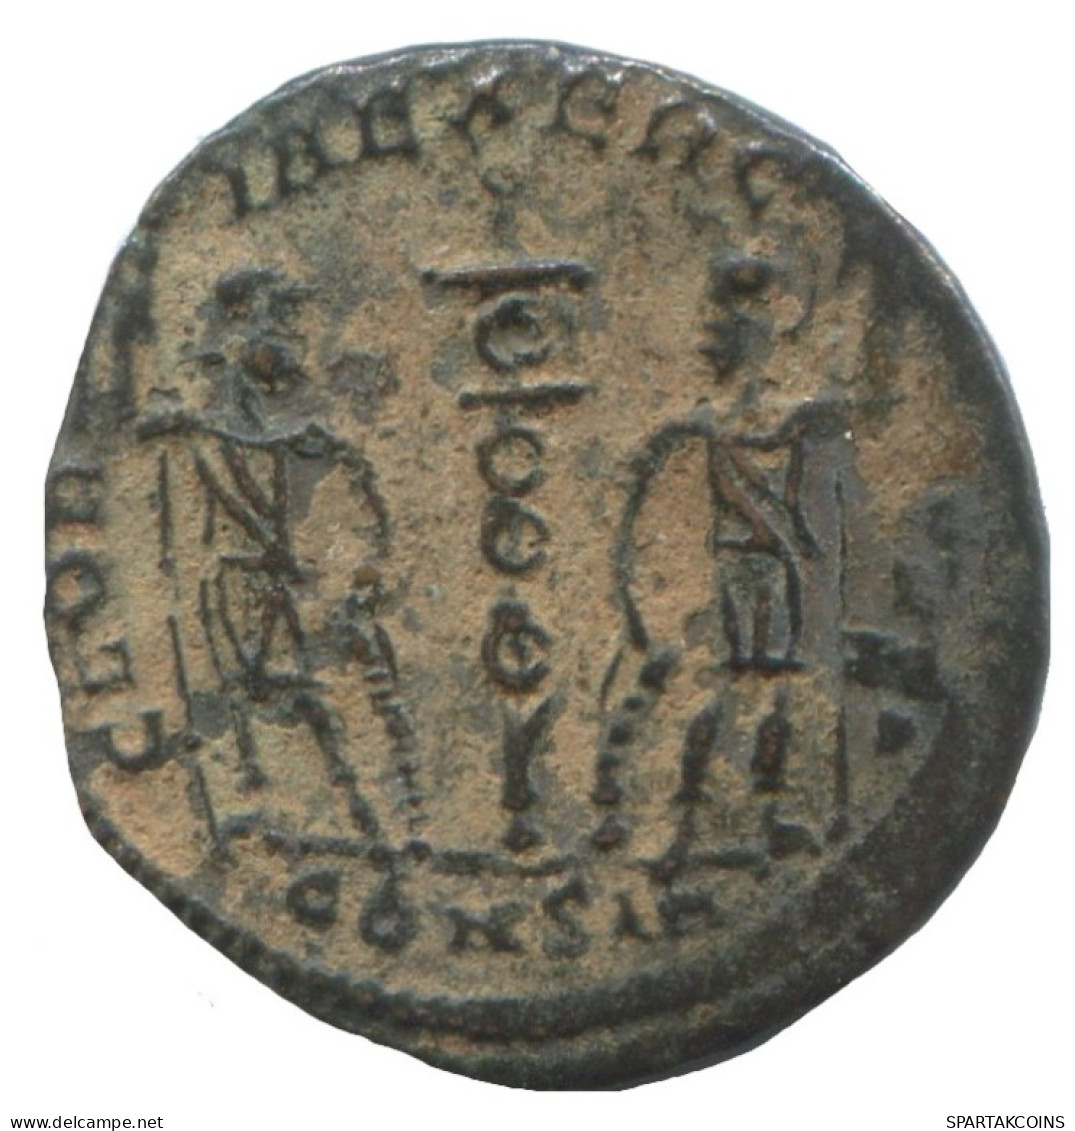 CONSTANS CONSTANTINOPLE CONS GLORIA EXERCITVS TWO SOLD. 1.1g/16m #ANN1416.10.D.A - L'Empire Chrétien (307 à 363)